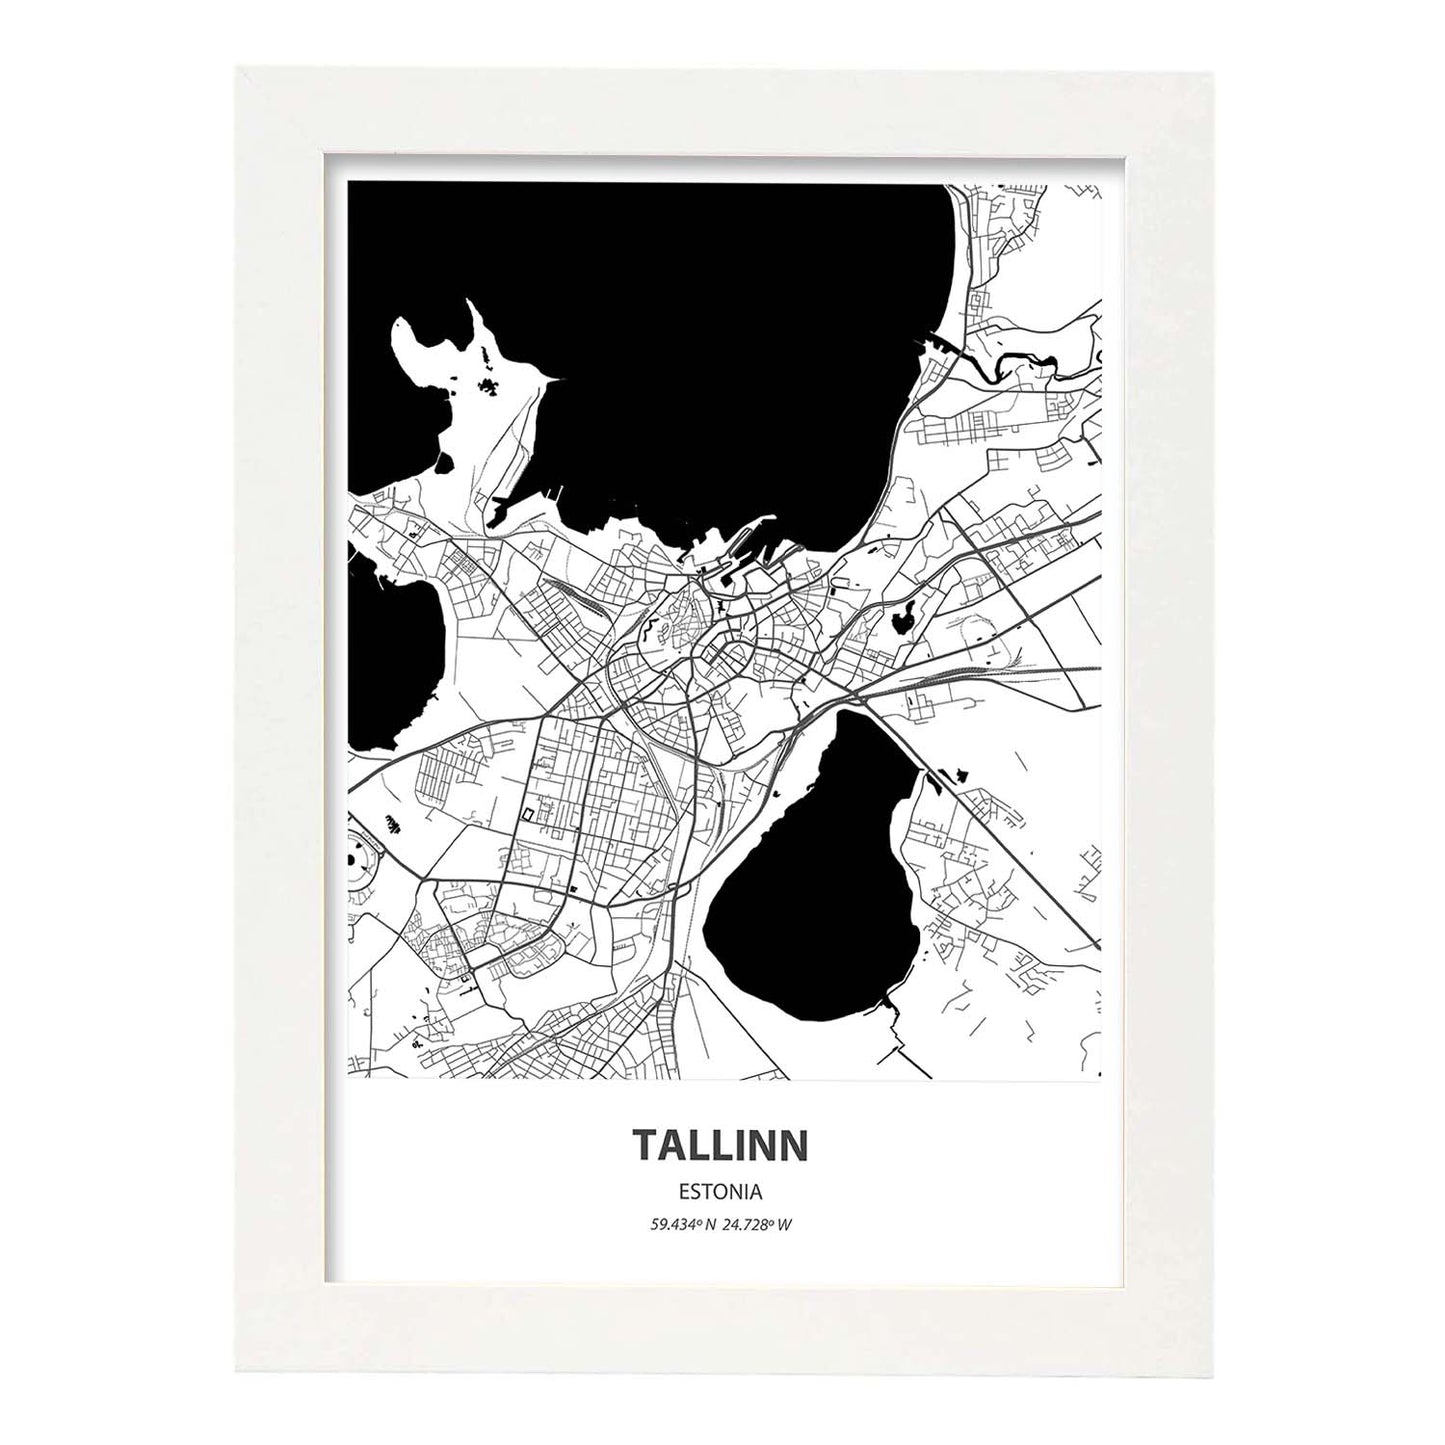 Poster con mapa de Tallinn - Estonia. Láminas de ciudades del norte de Europa con mares y ríos en color negro.-Artwork-Nacnic-A4-Marco Blanco-Nacnic Estudio SL